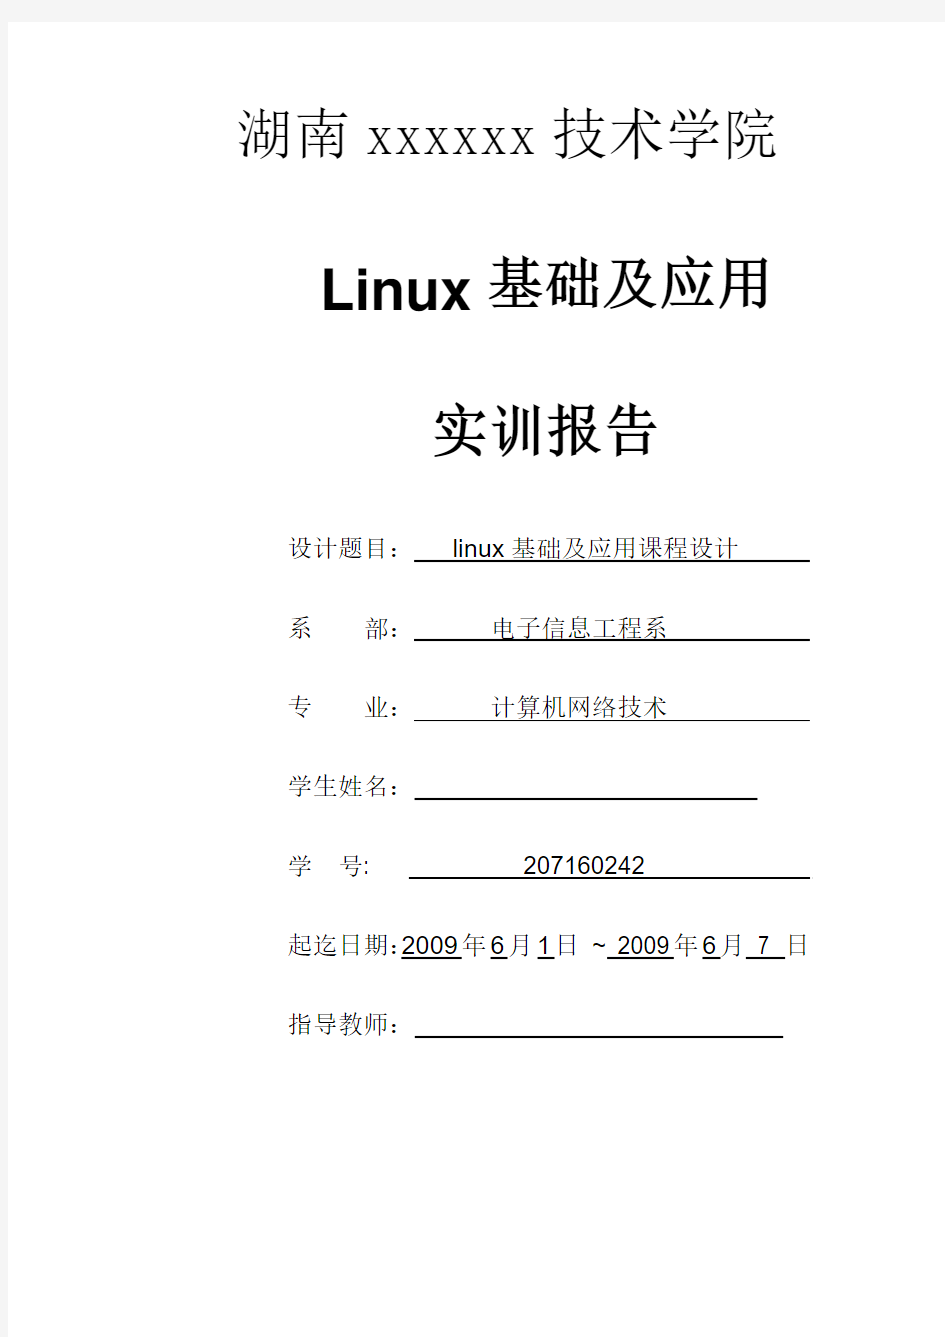 linux基础与应用实训报告